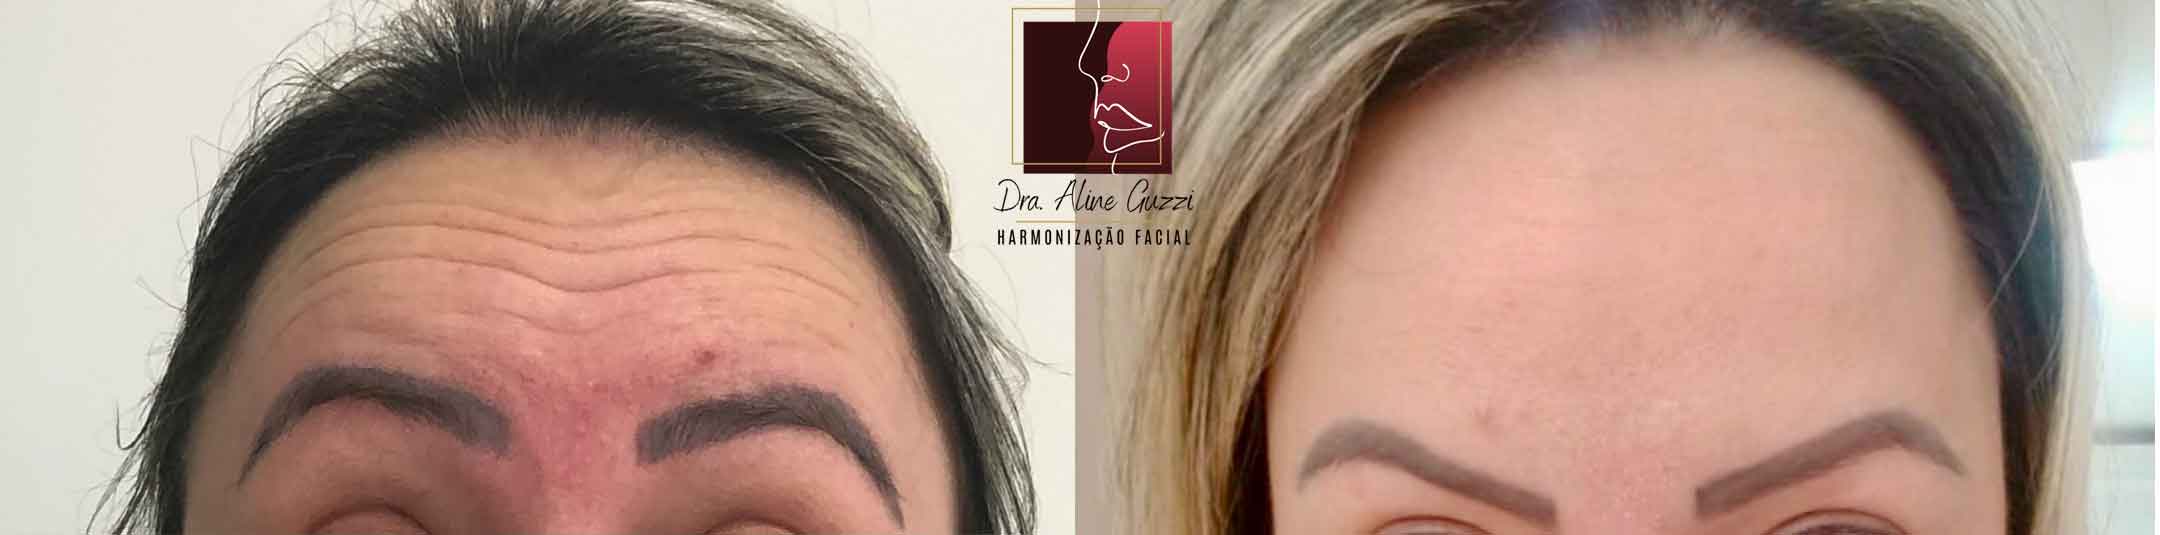 Harmonização Facial - Dra. Aline Guzzi: Caso Clínico de Botox